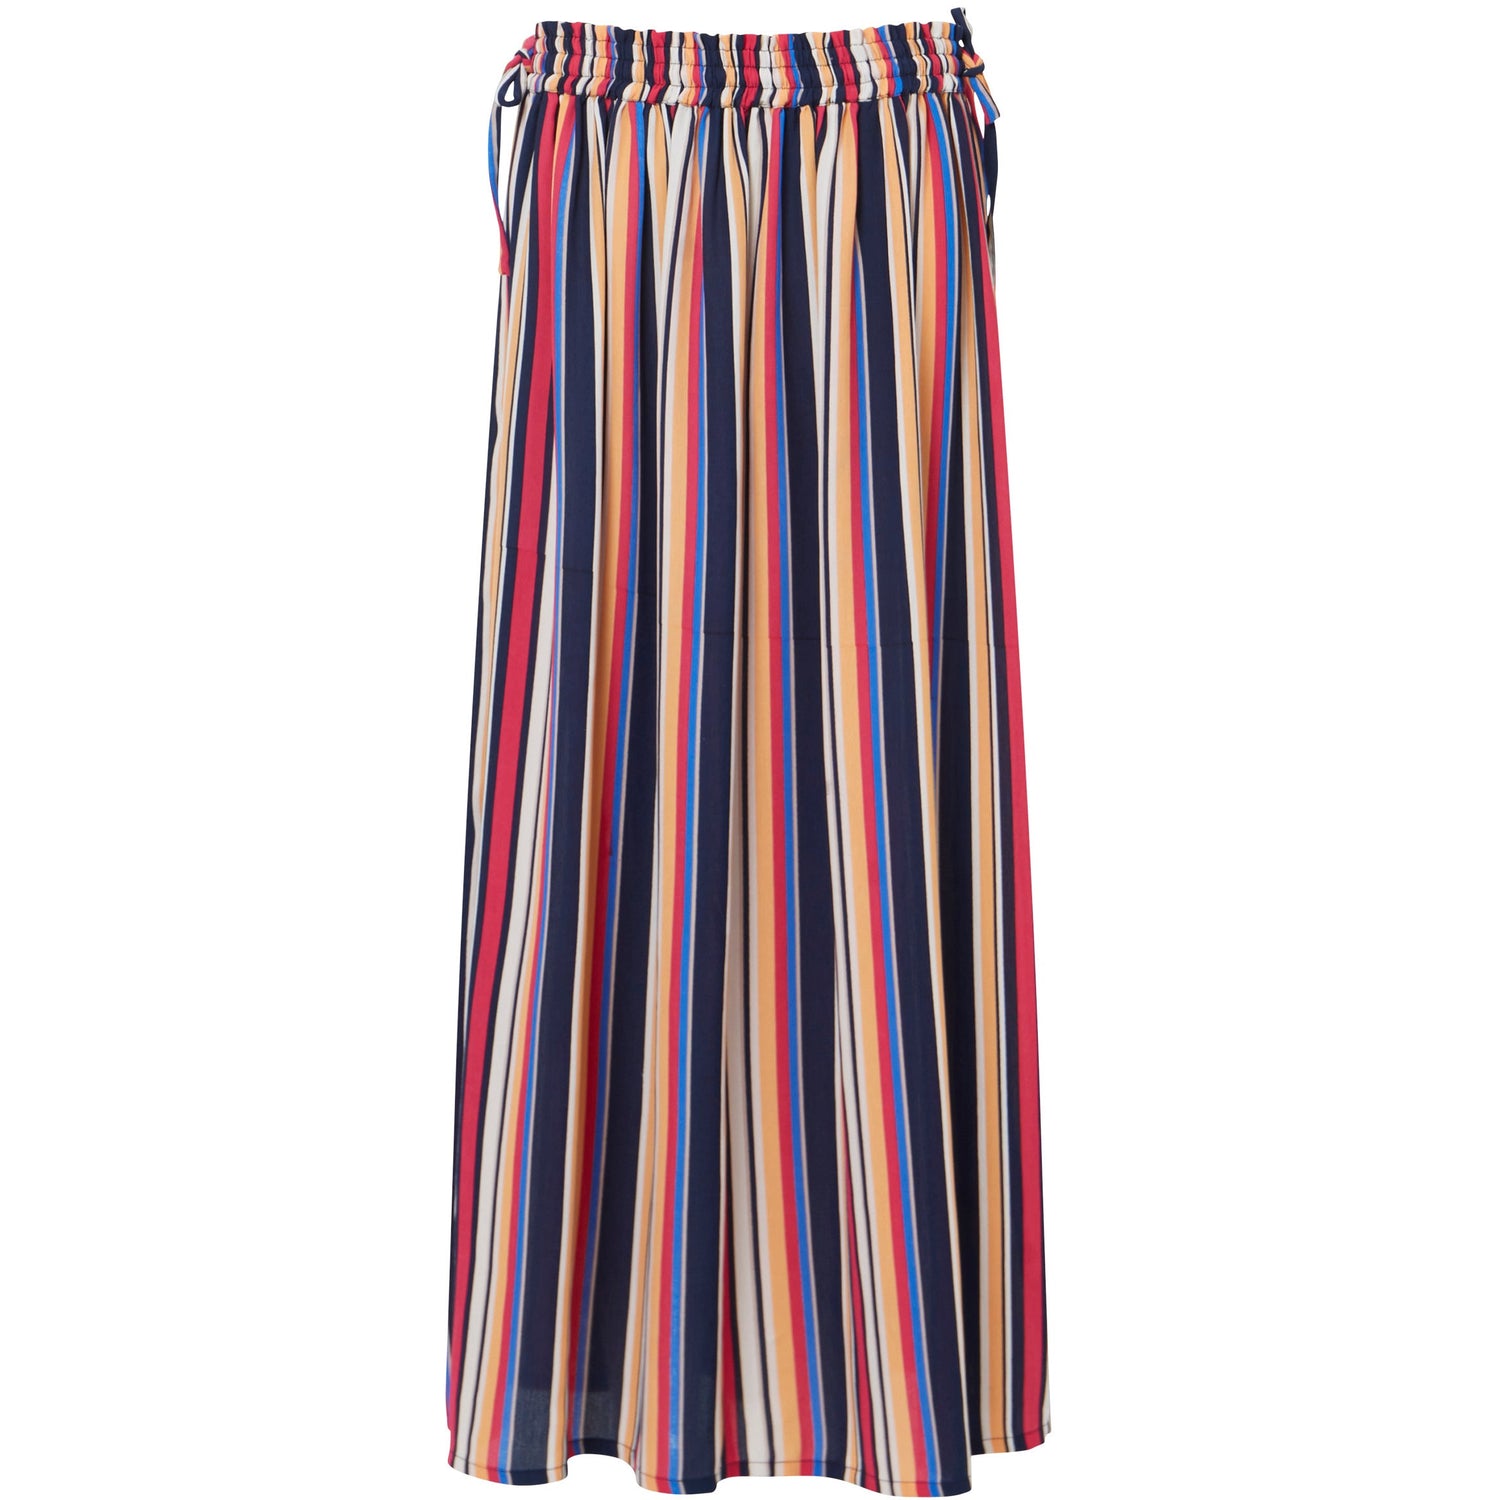 Stripe Skirt